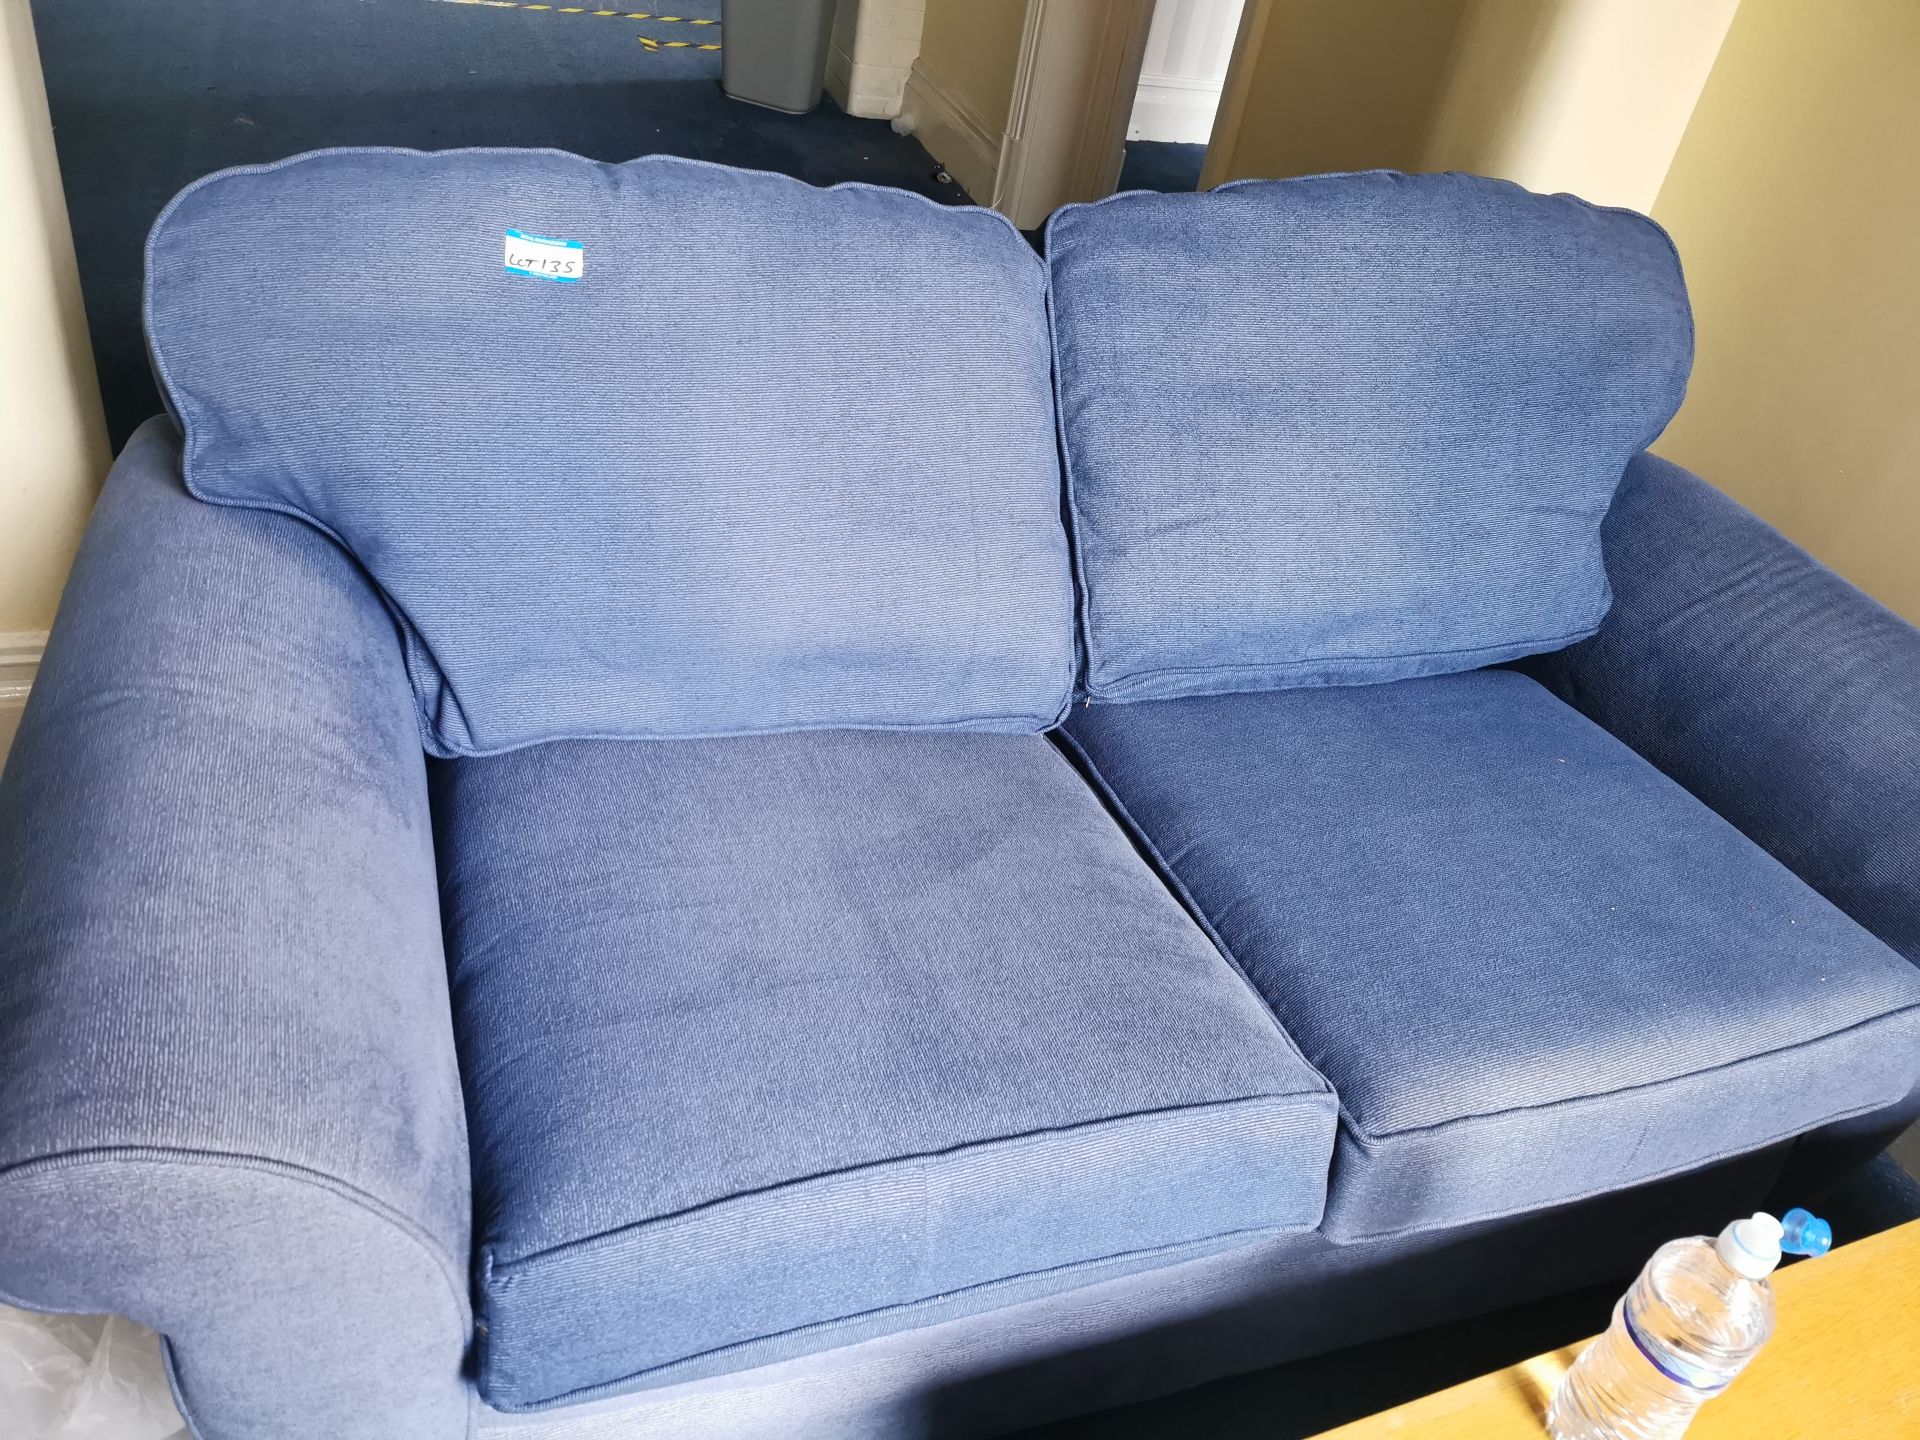 Blue fabric sofa